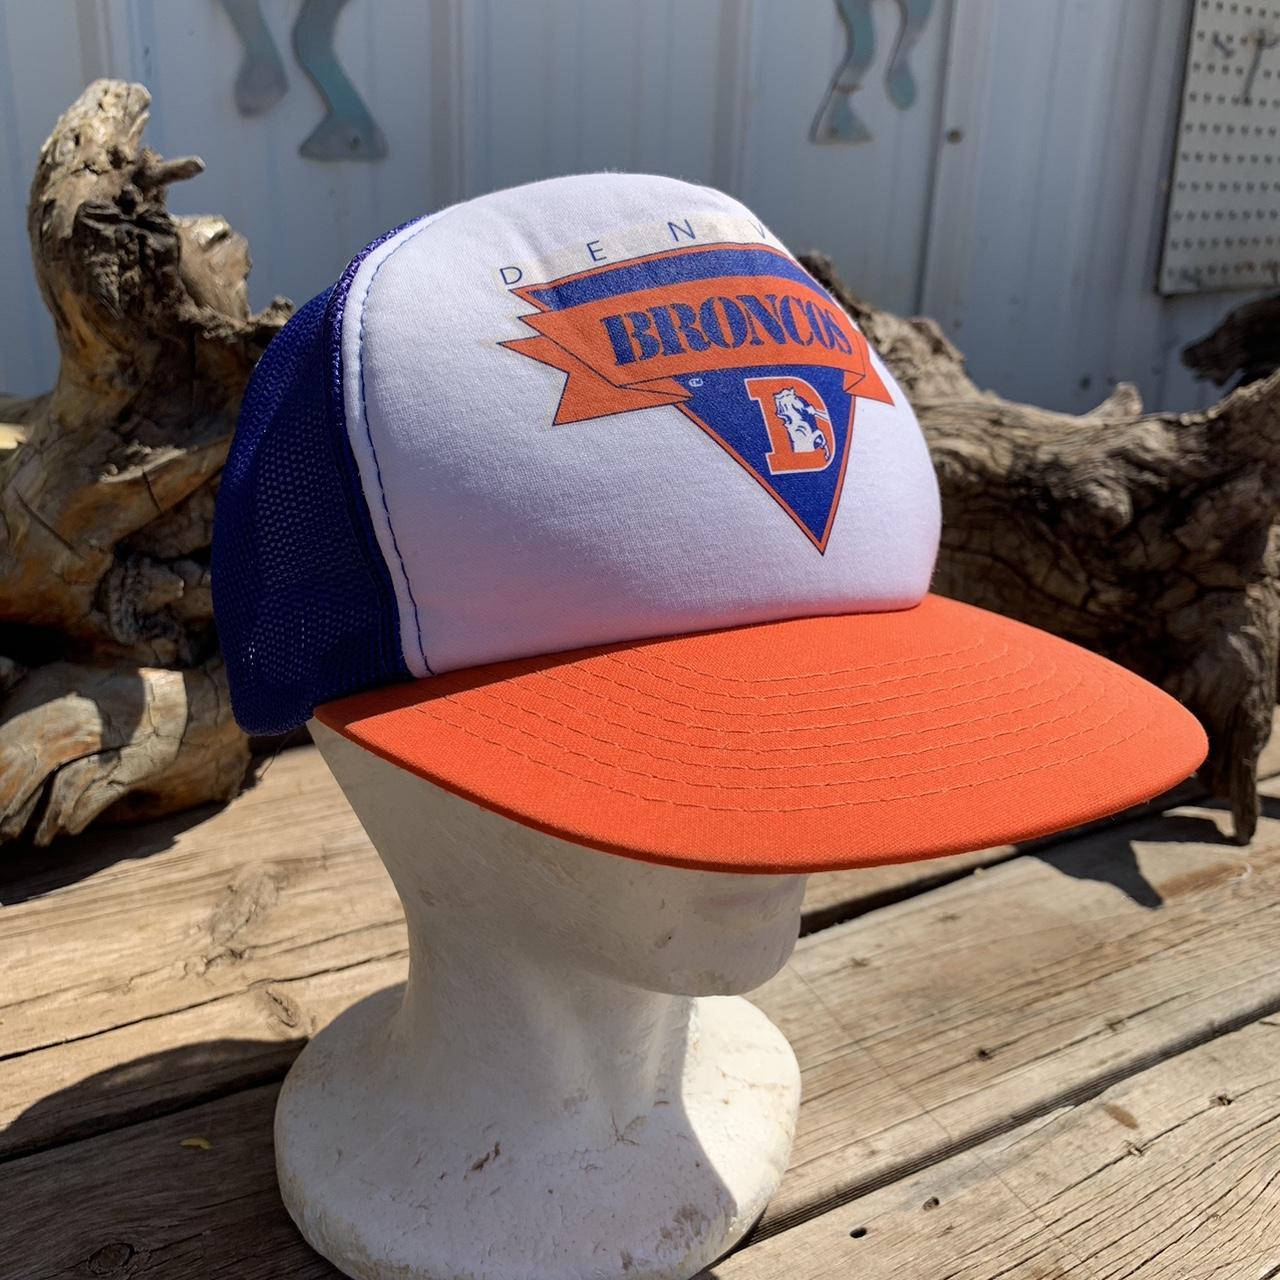 Vintage Denver Broncos Snapback Hat Adjustable Fit - Depop